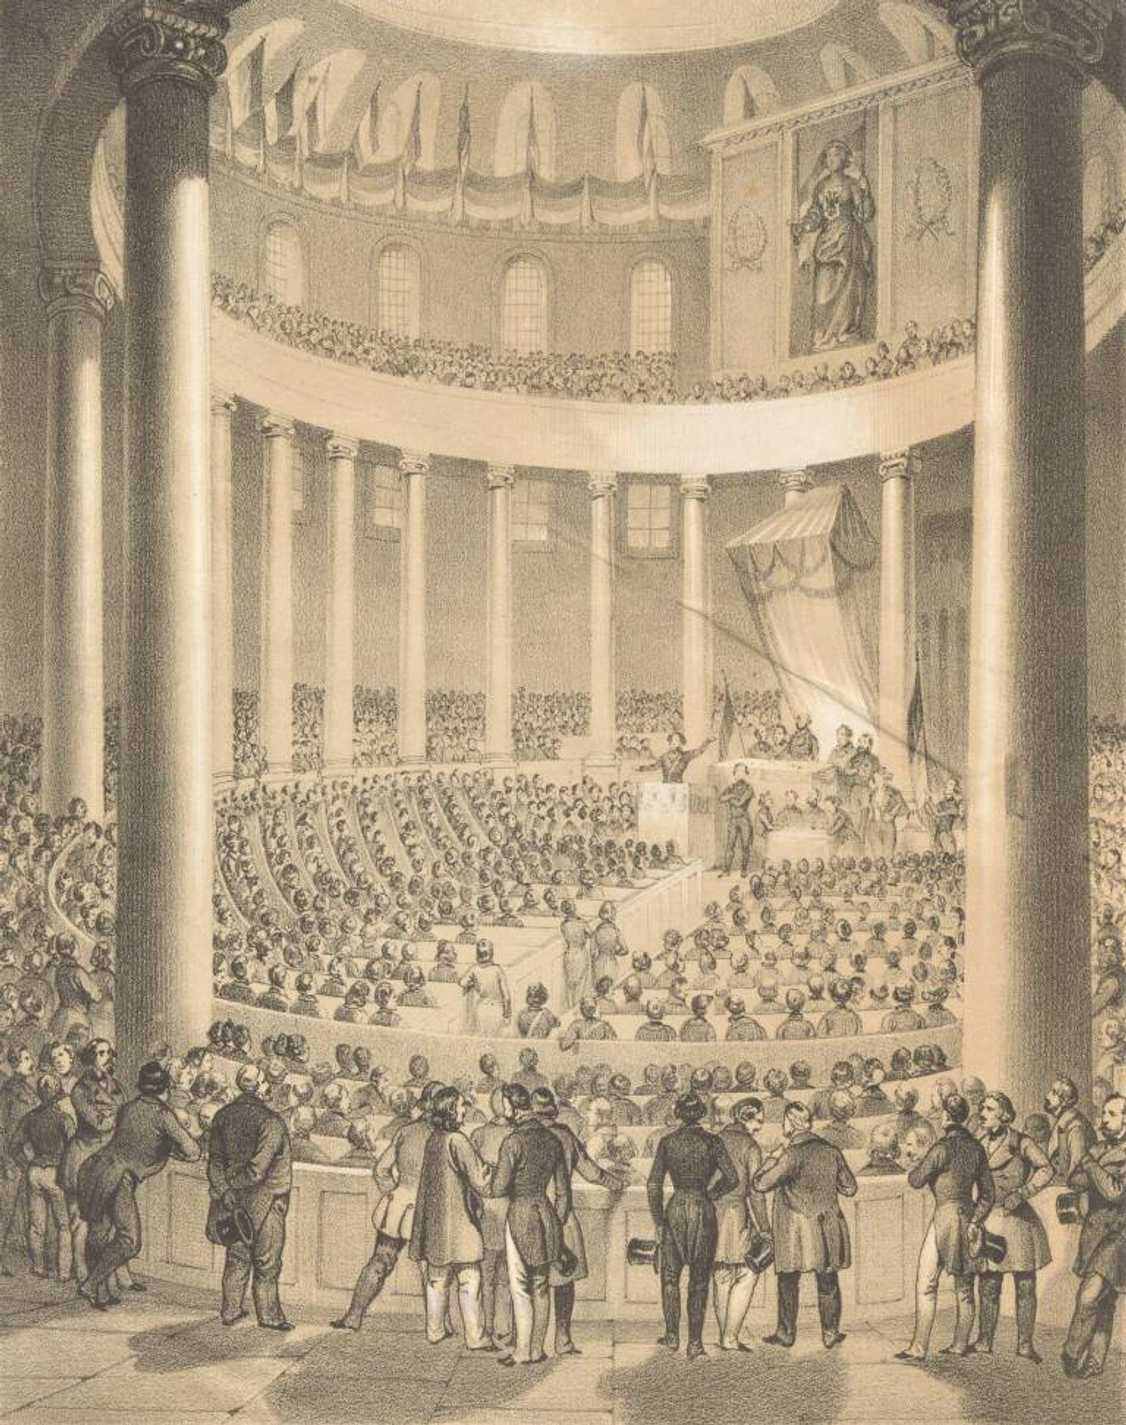 Pohled do jednacího sálu Německého národního shromáždění ve Frankfurtu nad Mohanem (1848).
